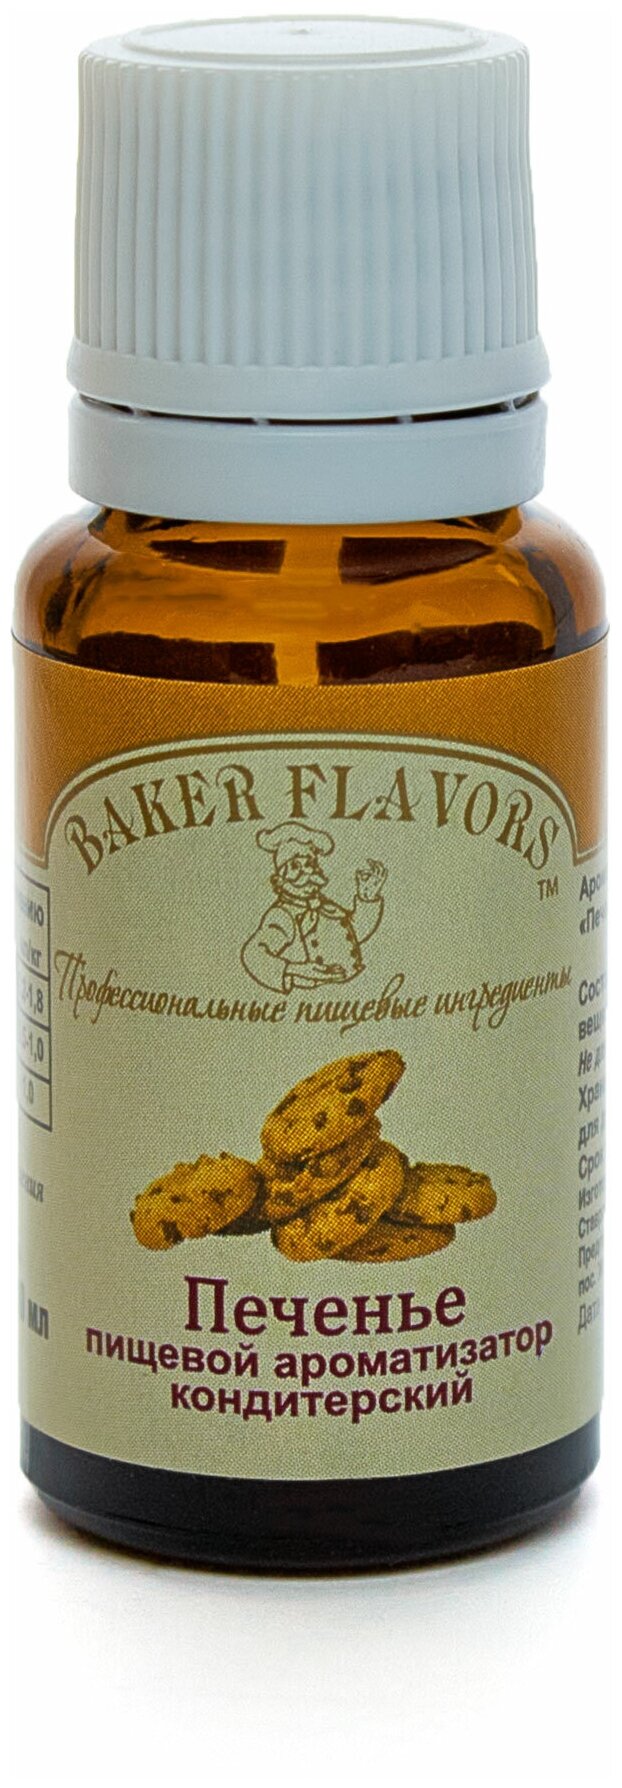 Baker Flavors ароматизатор пищевой Печенье, 10 мл